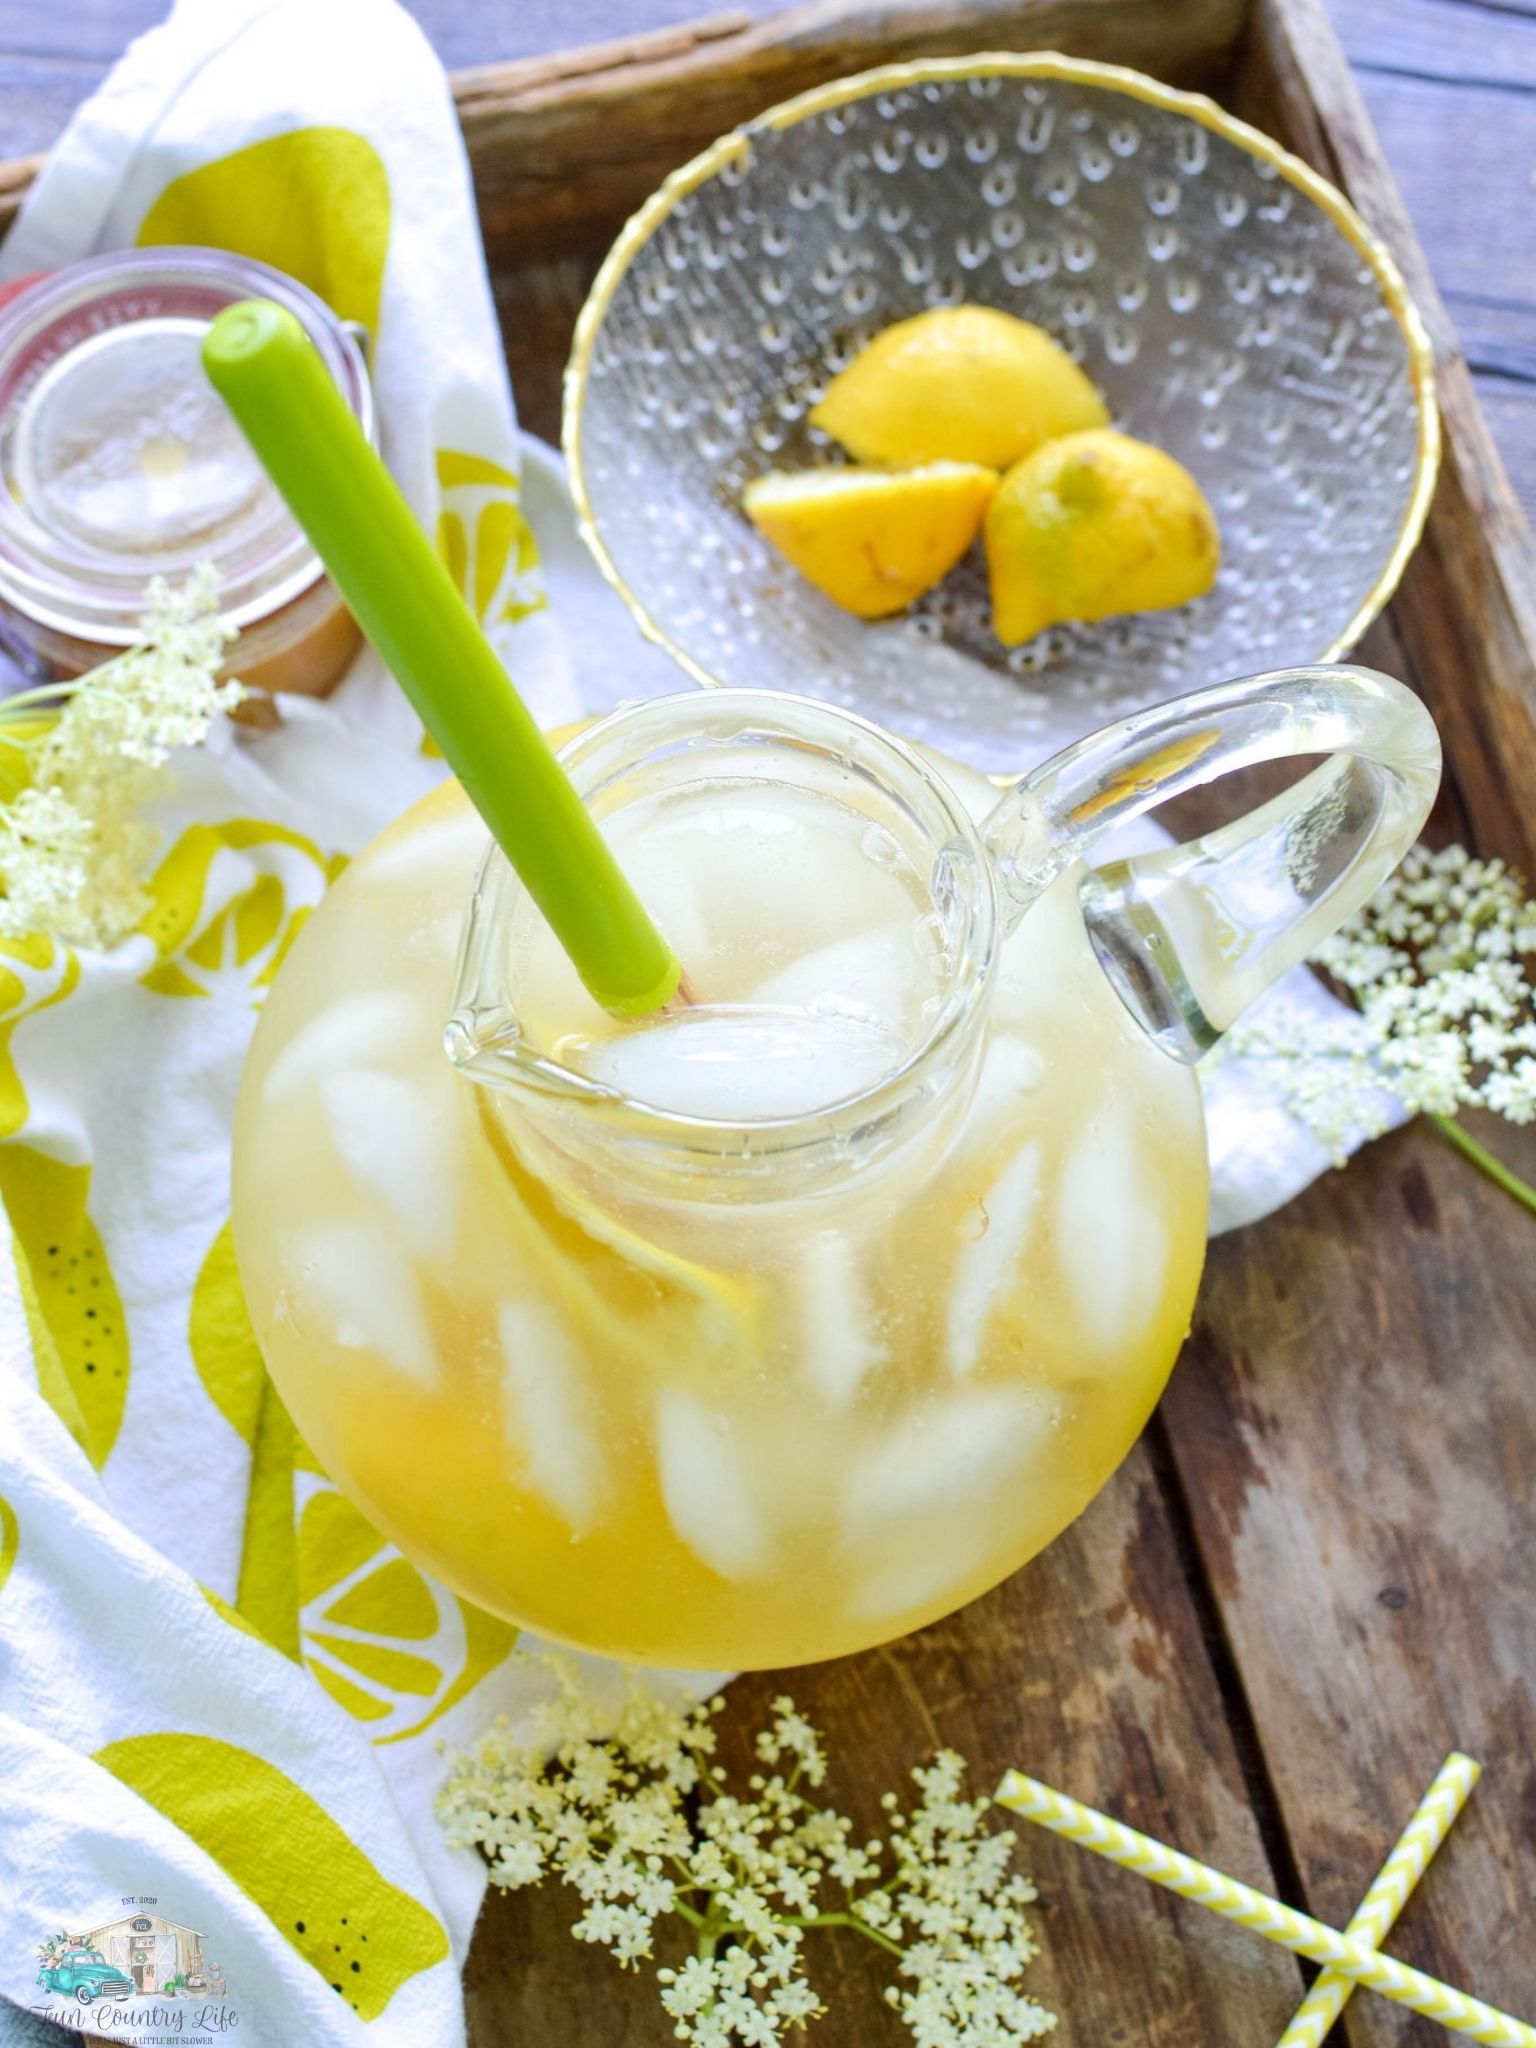 A glass pitcher of Elderflower Lemonade next to a bowl full of lemons